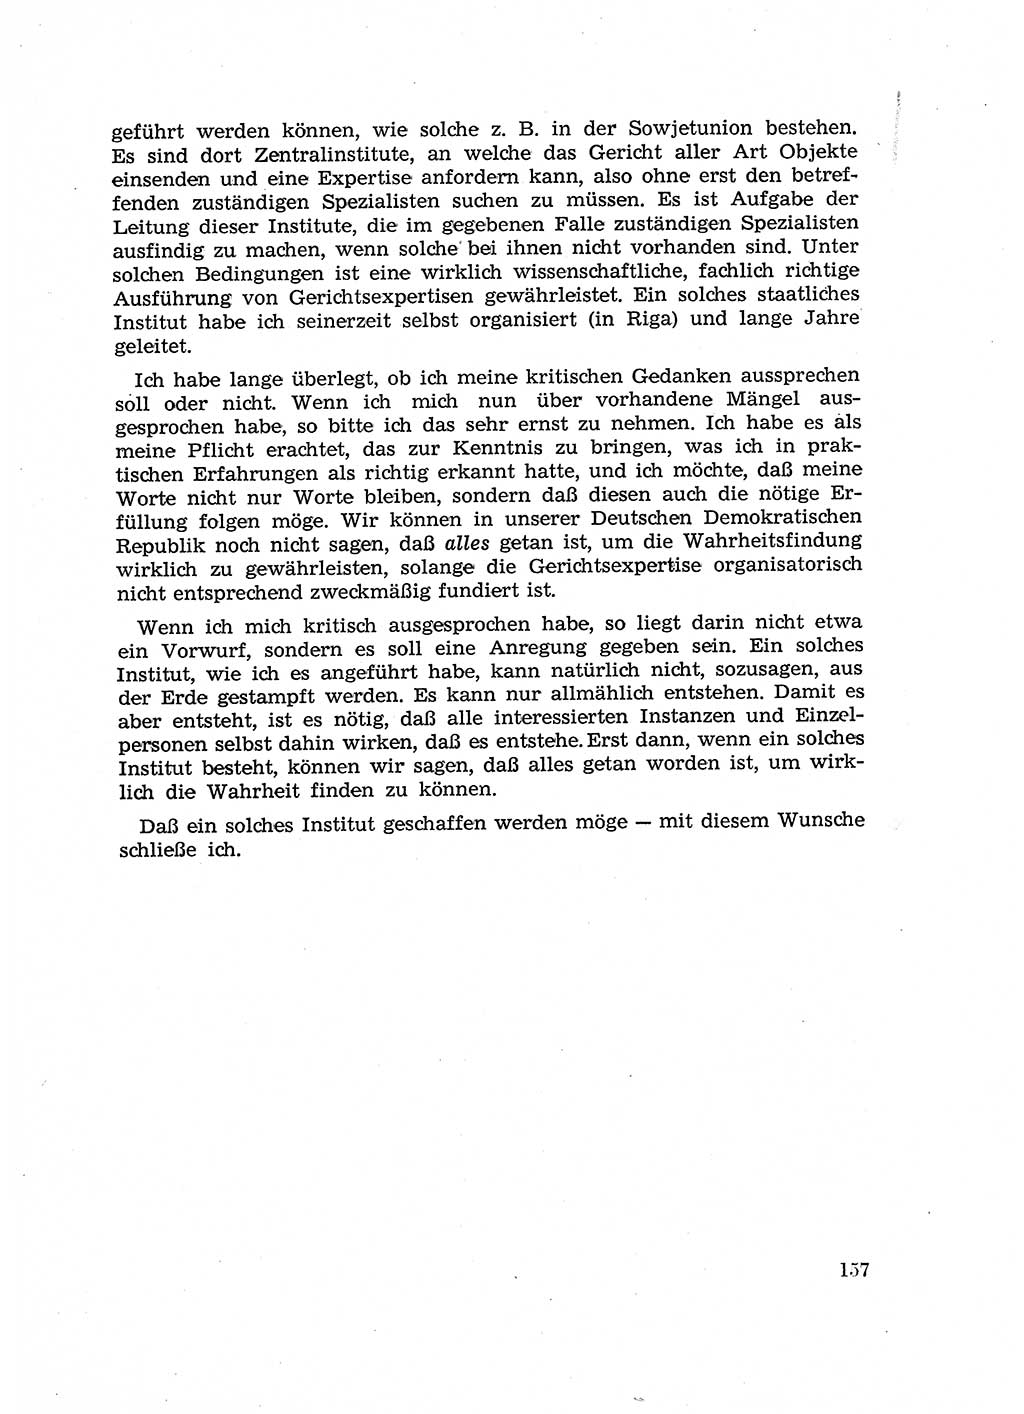 Fragen des Beweisrechts im Strafprozess [Deutsche Demokratische Republik (DDR)] 1956, Seite 157 (Fr. BeweisR. Str.-Proz. DDR 1956, S. 157)